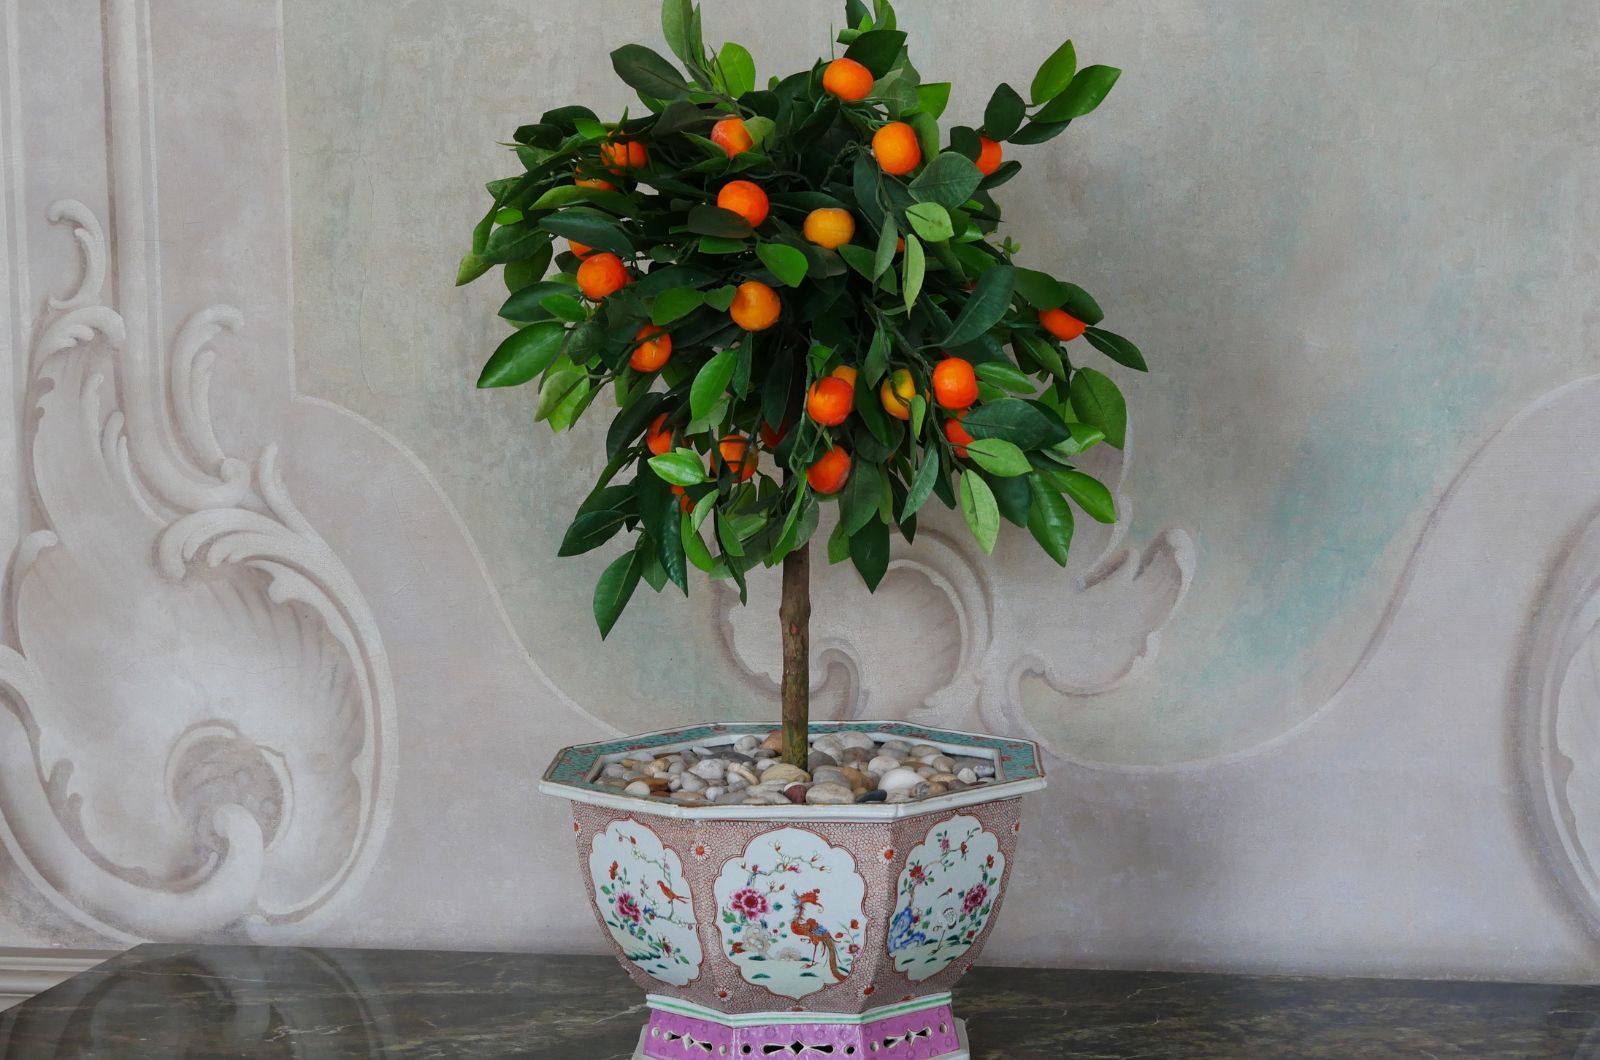 Orange plant in the pot